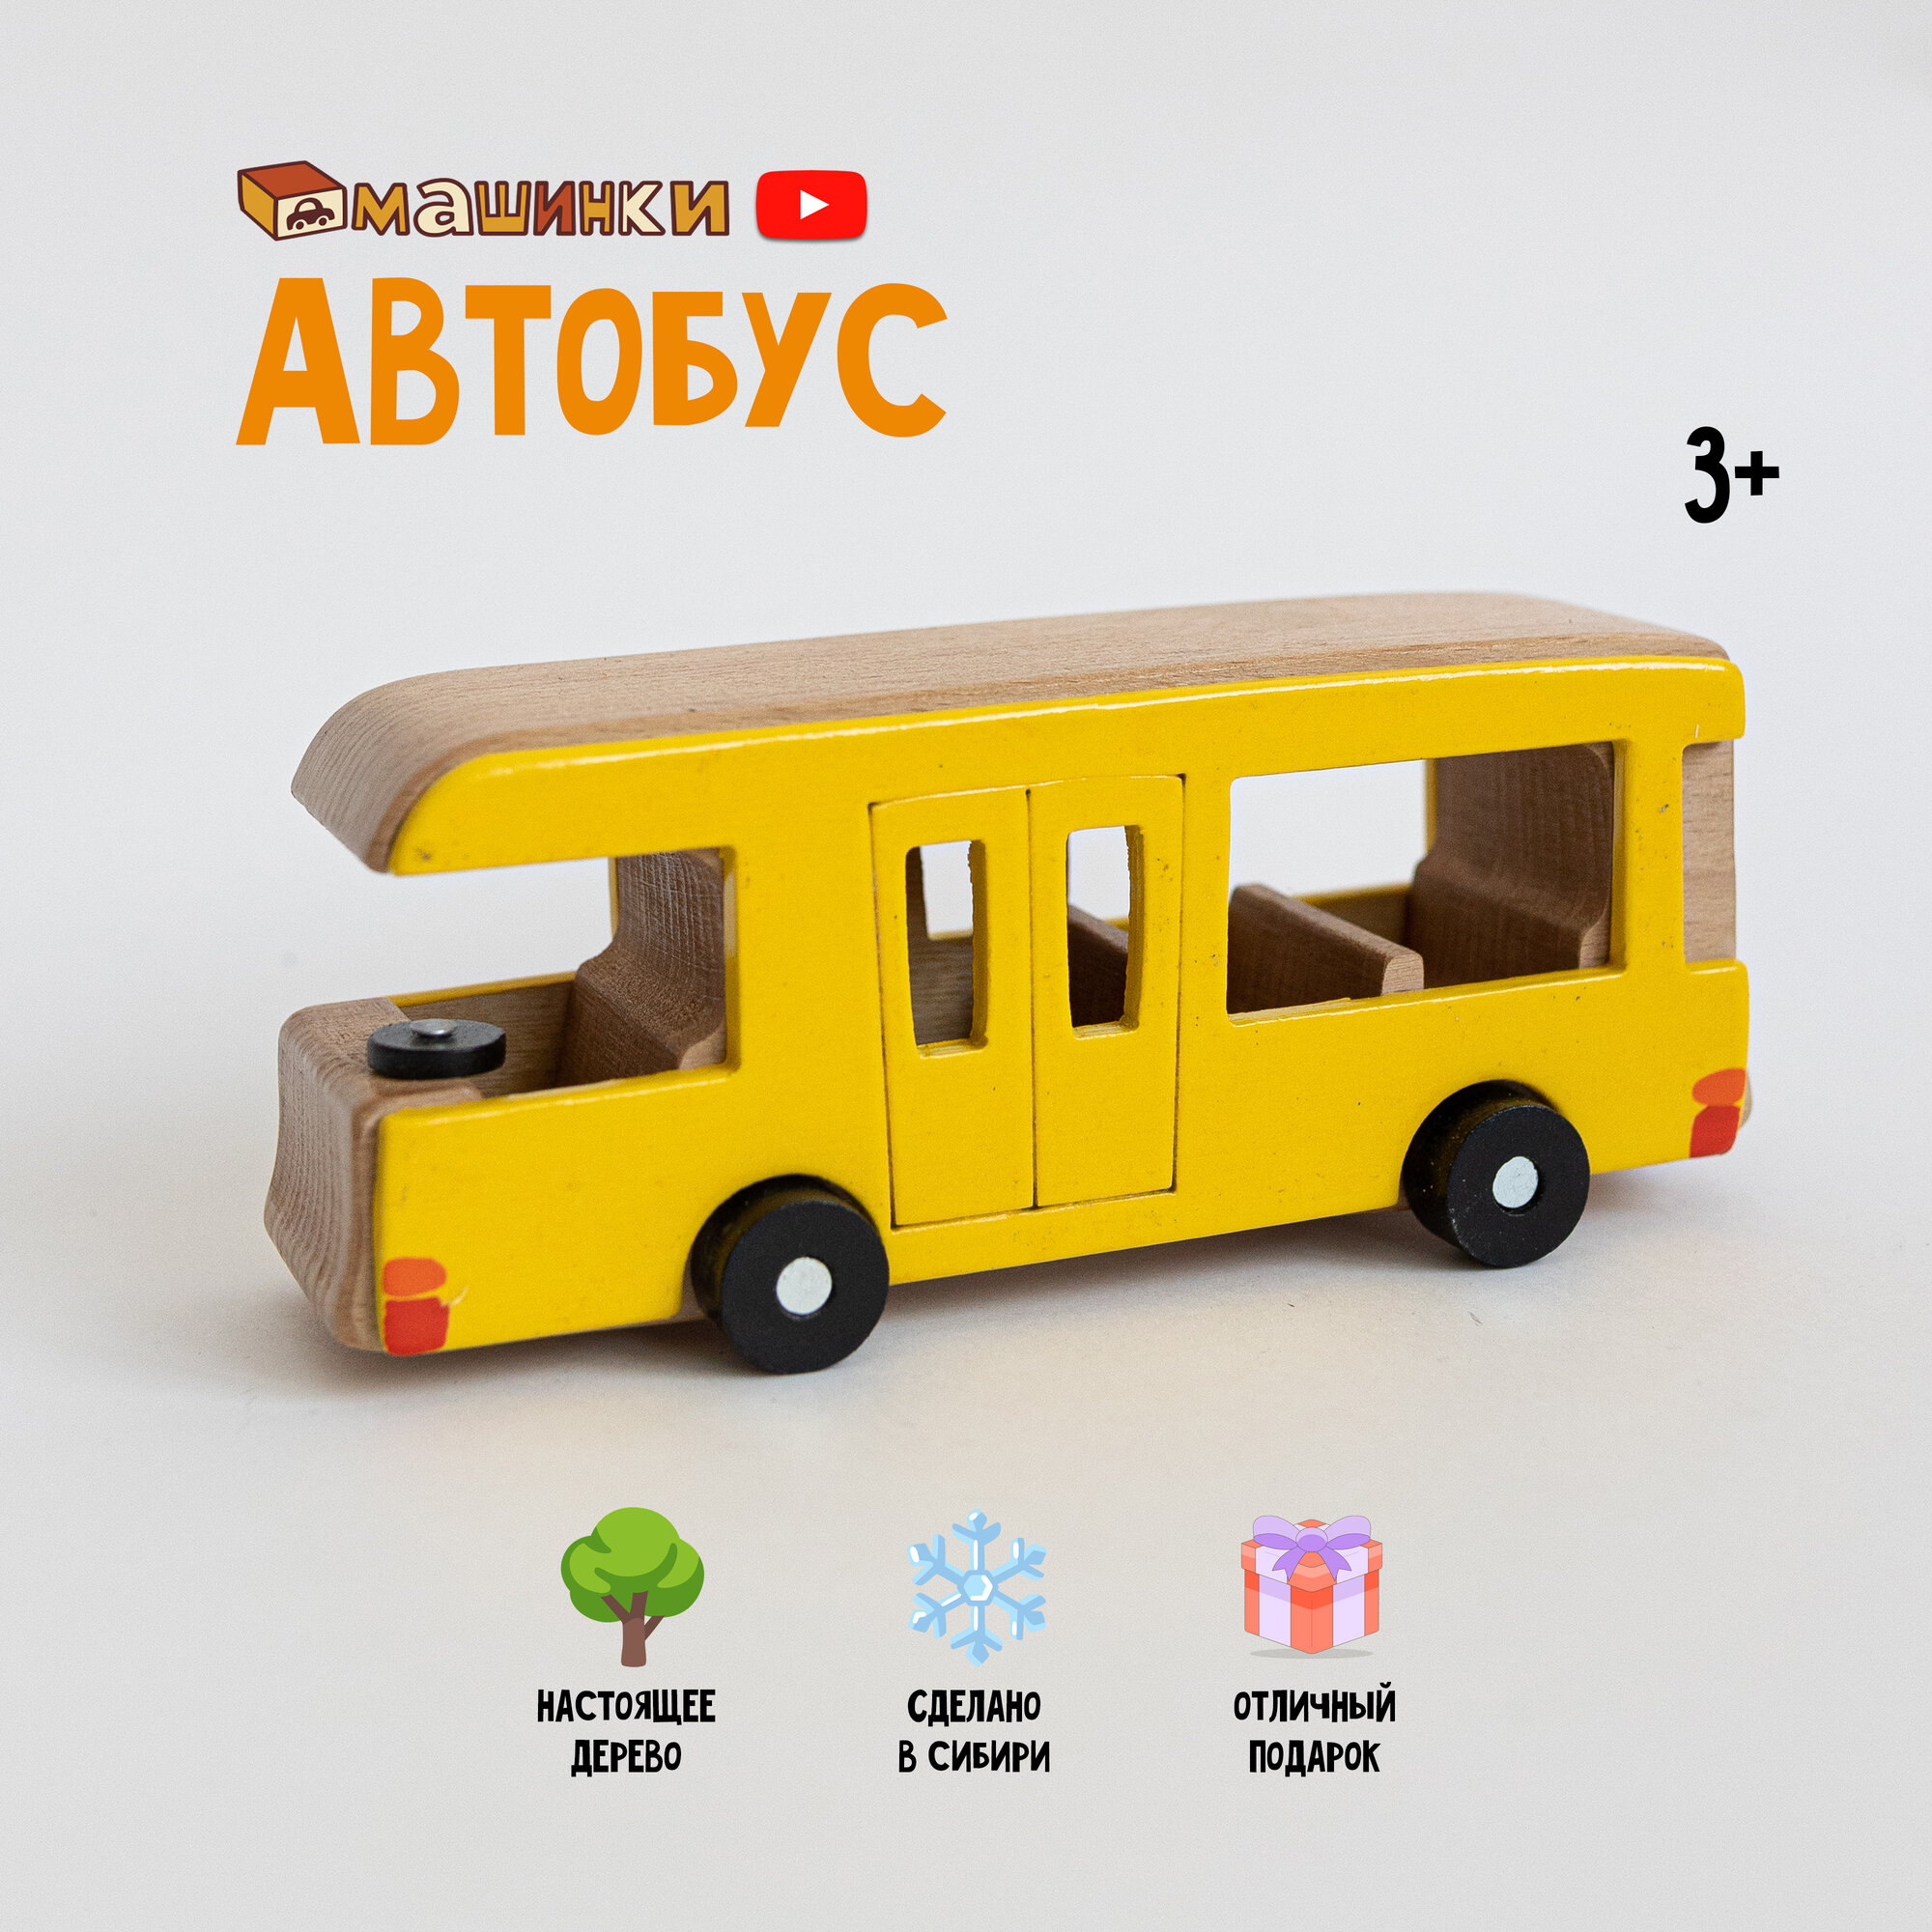 Игрушечный автобус из мультфильма "Машинки", натуральное дерево